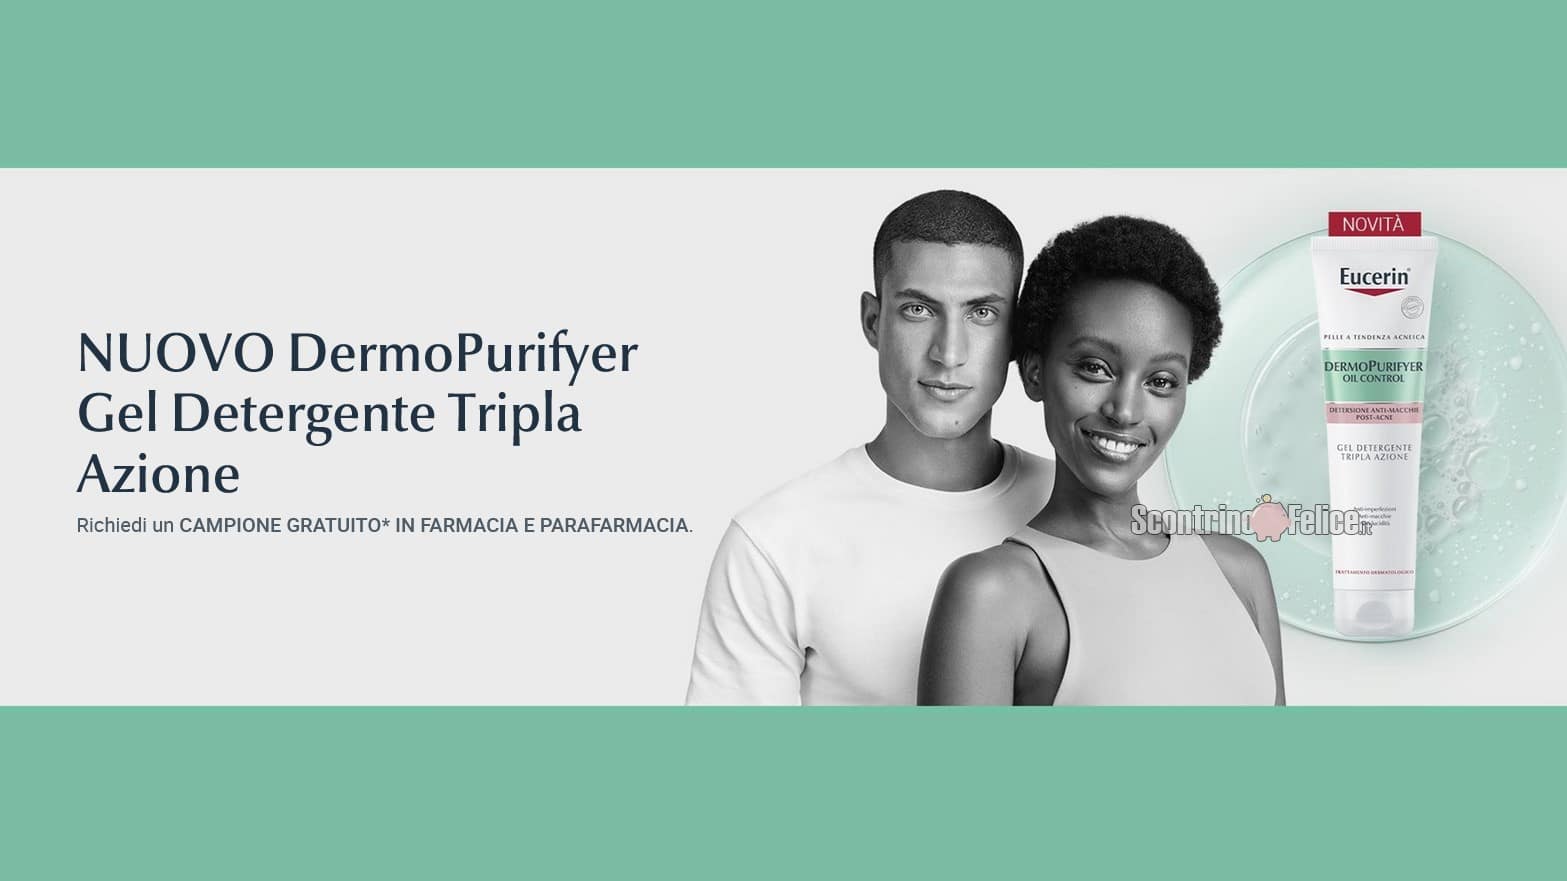 Nuovo DermoPurifyer Gel Detergente Tripla Azione di Eucerin: ritira il campione omaggio!